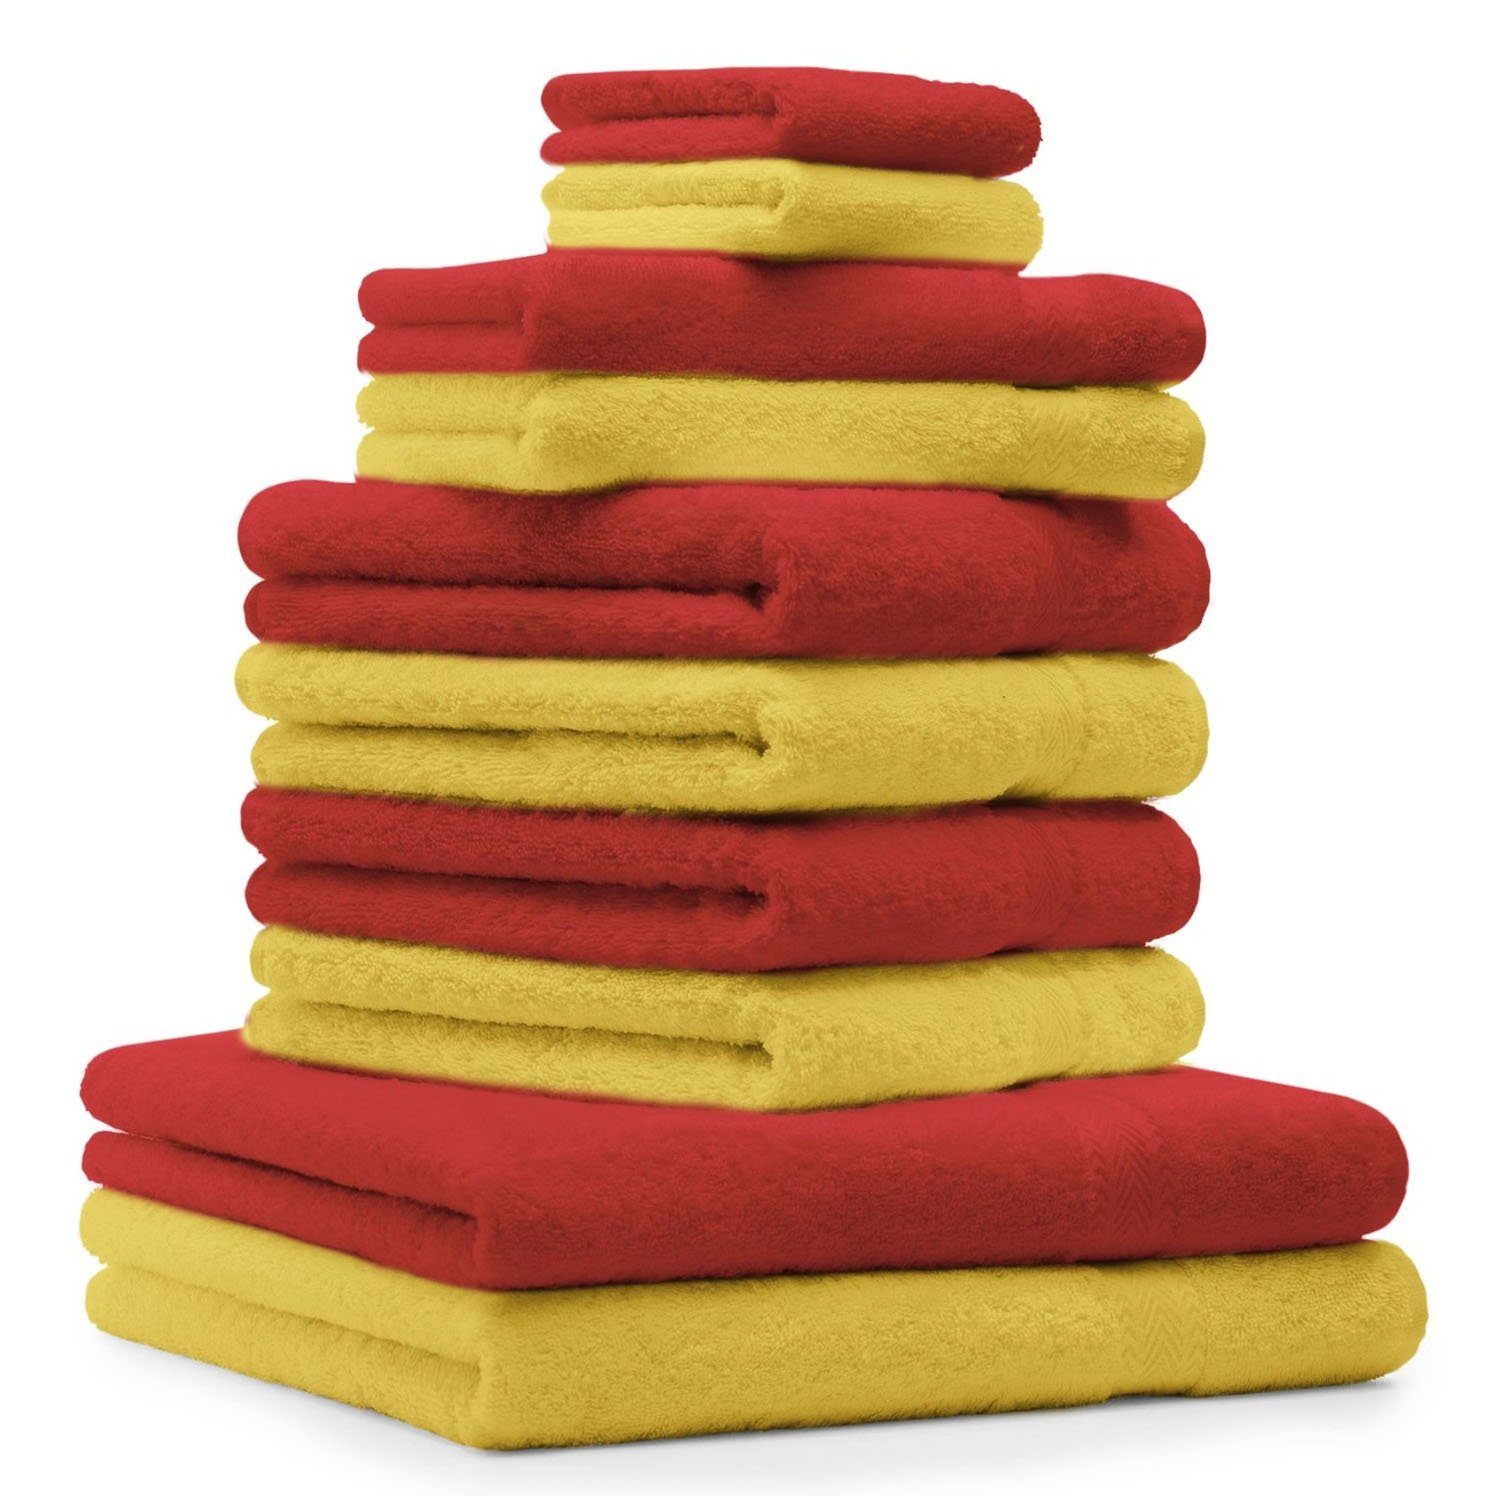 Betz Handtuch Set 10-TLG. Handtuch-Set Classic Farbe gelb und rot, 100% Baumwolle